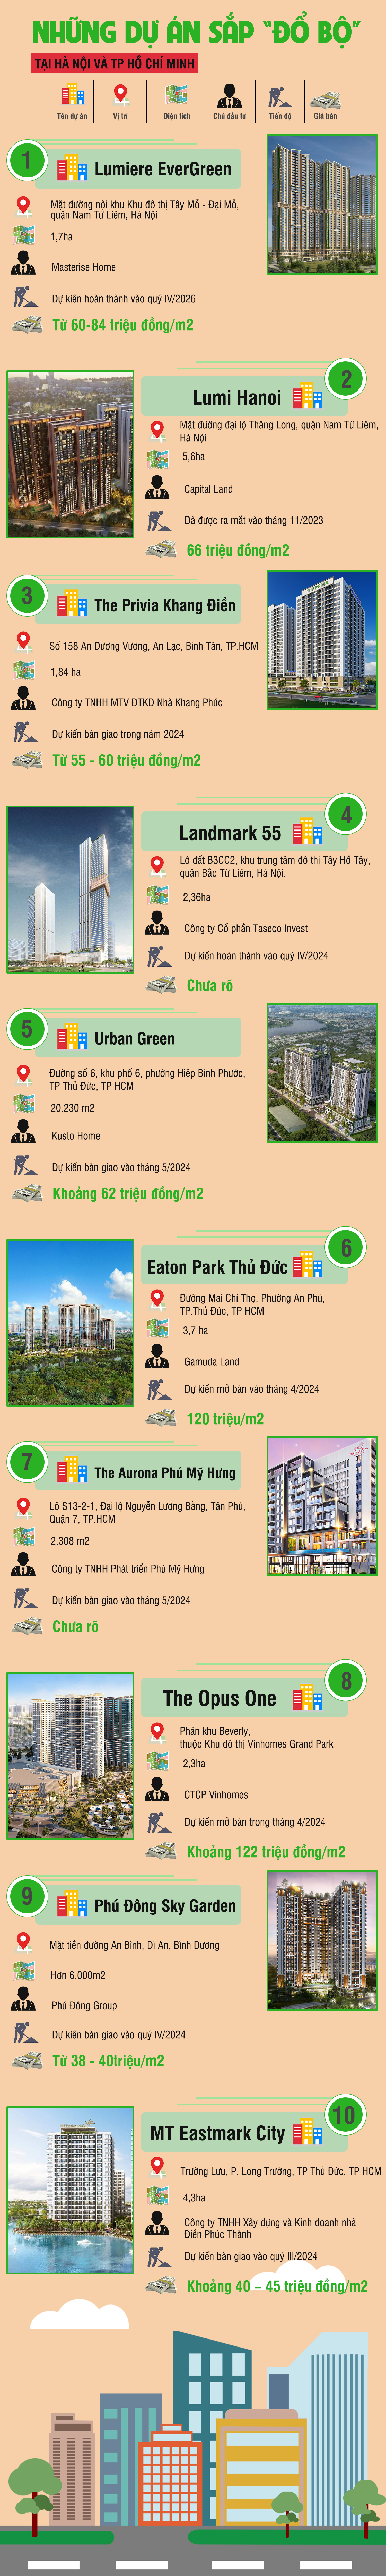 [Infographic] Những dự án sắp “đổ bộ” tại Hà Nội và TP Hồ Chí Minh - Ảnh 1